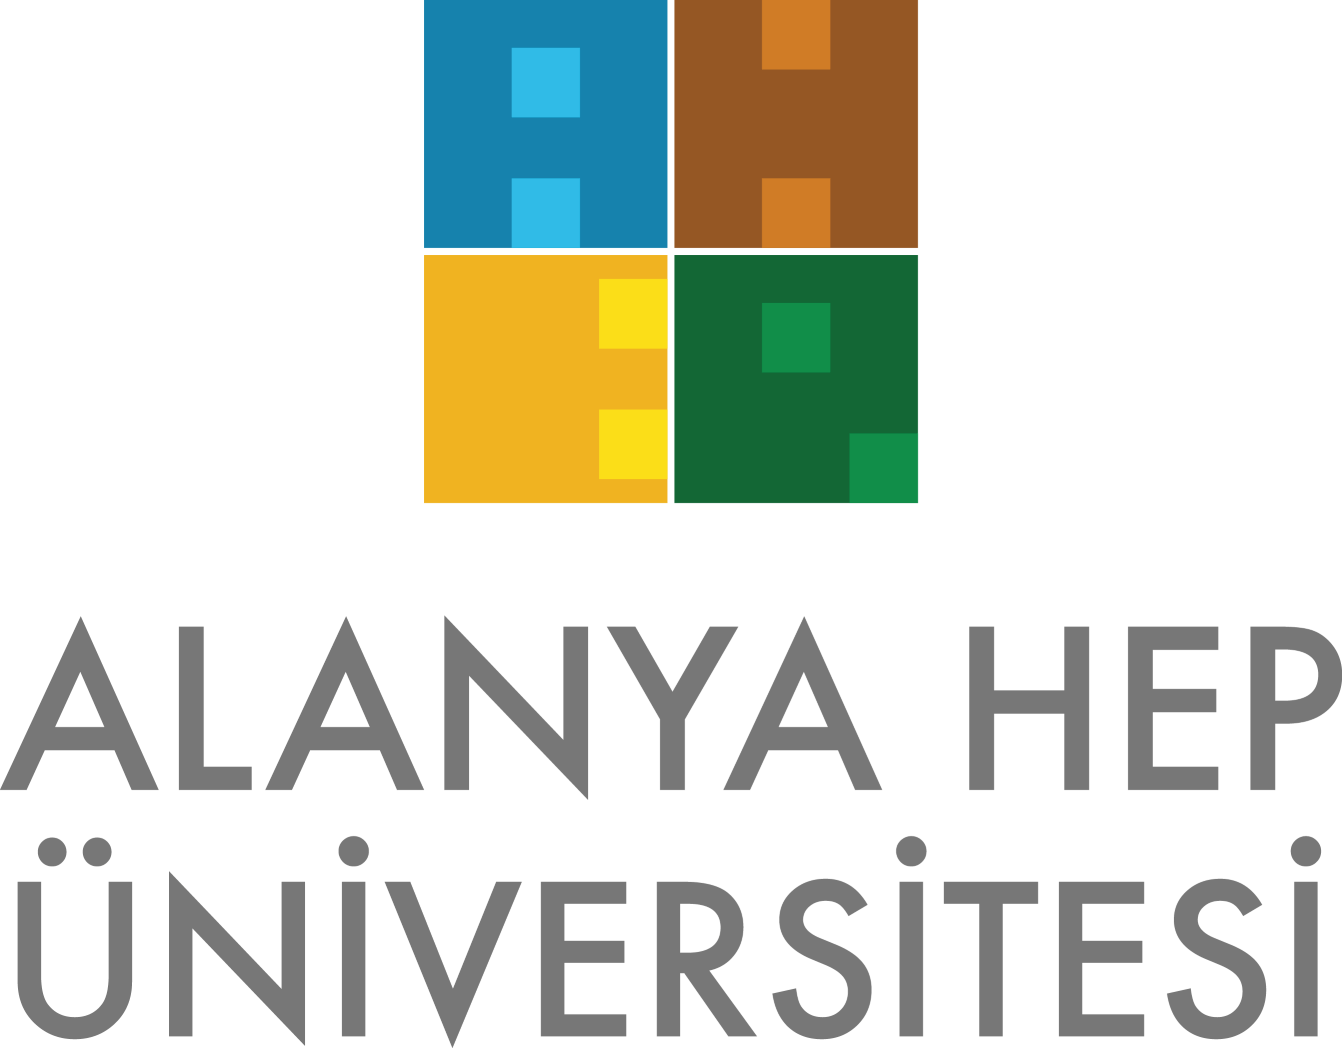 Alanya hep universitesi logo